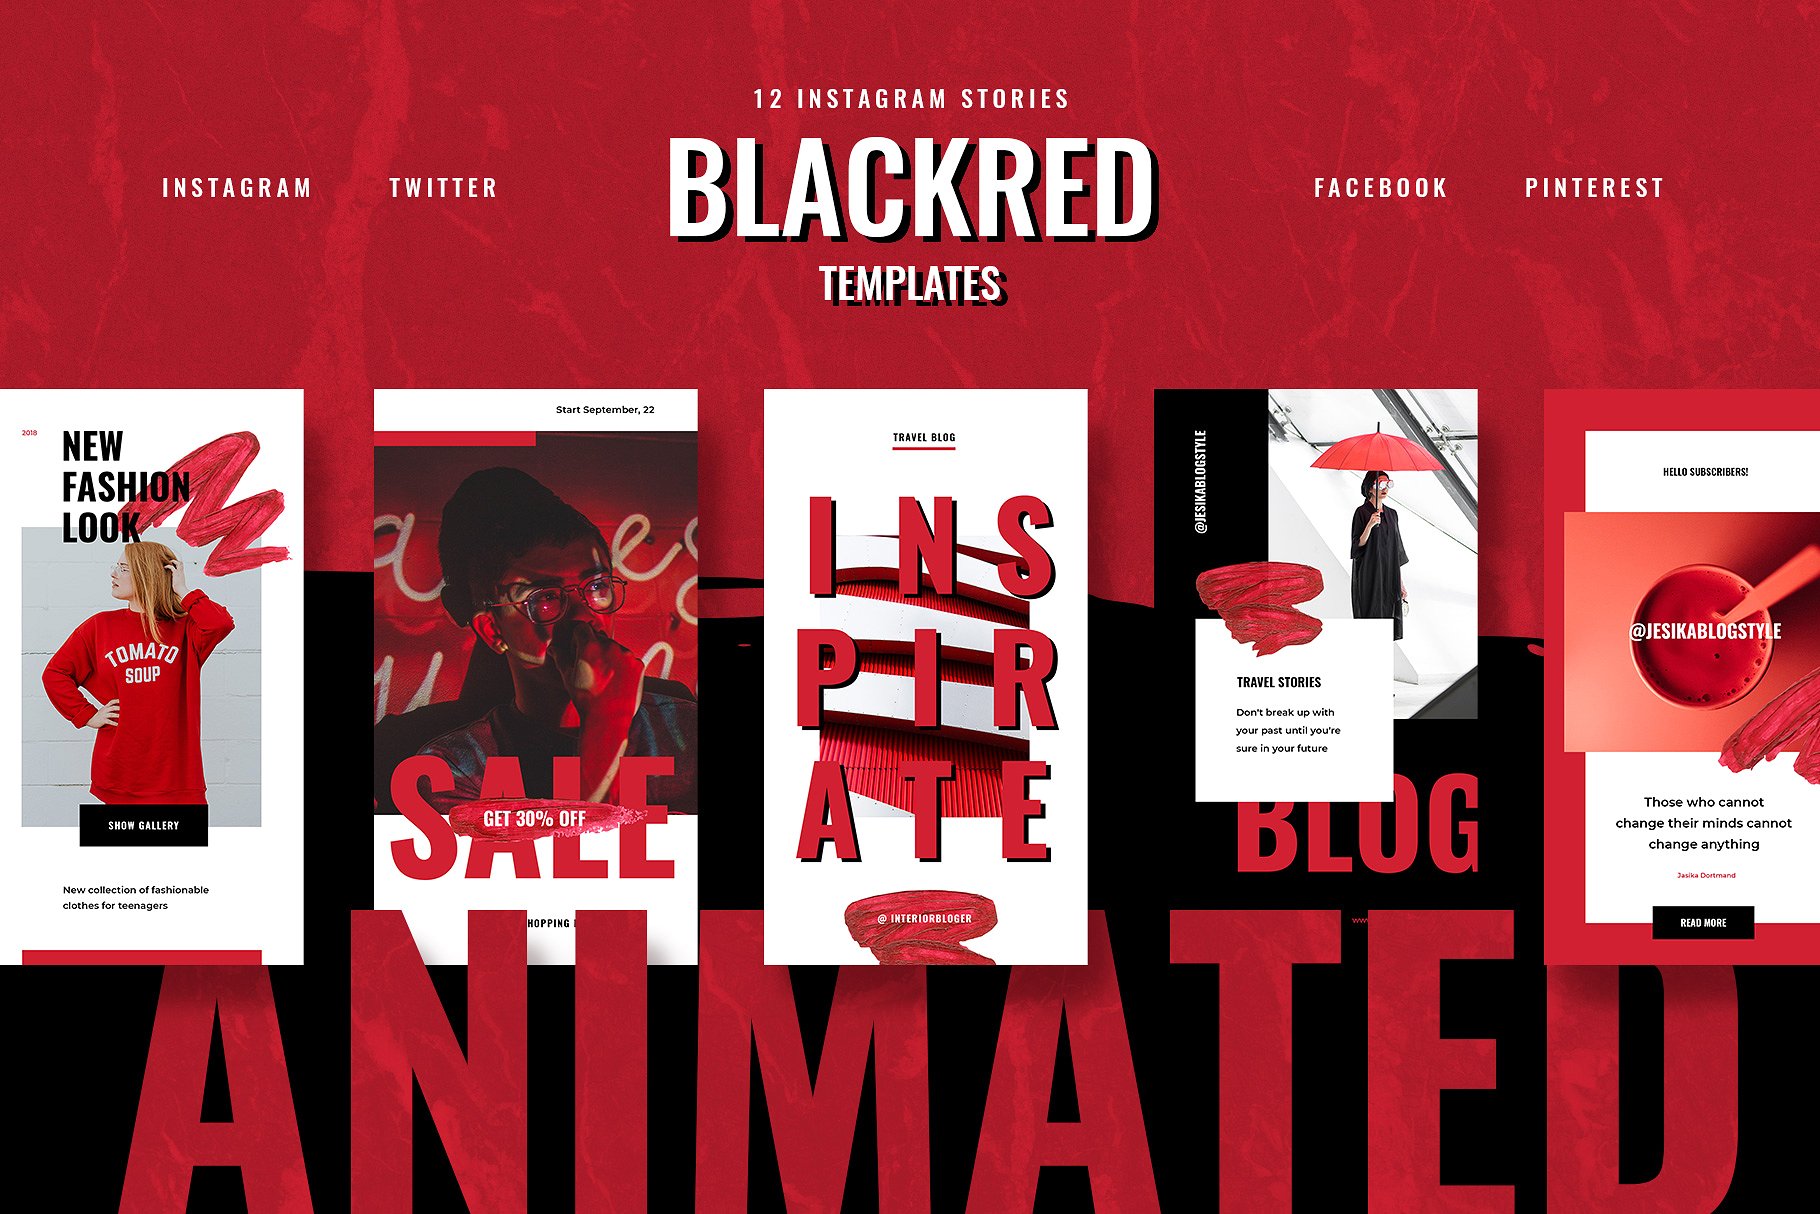 色彩活泼的红黑配色Ins故事贴图模板蚂蚁素材精选 ANIMATED Blackred Instagram Stories插图